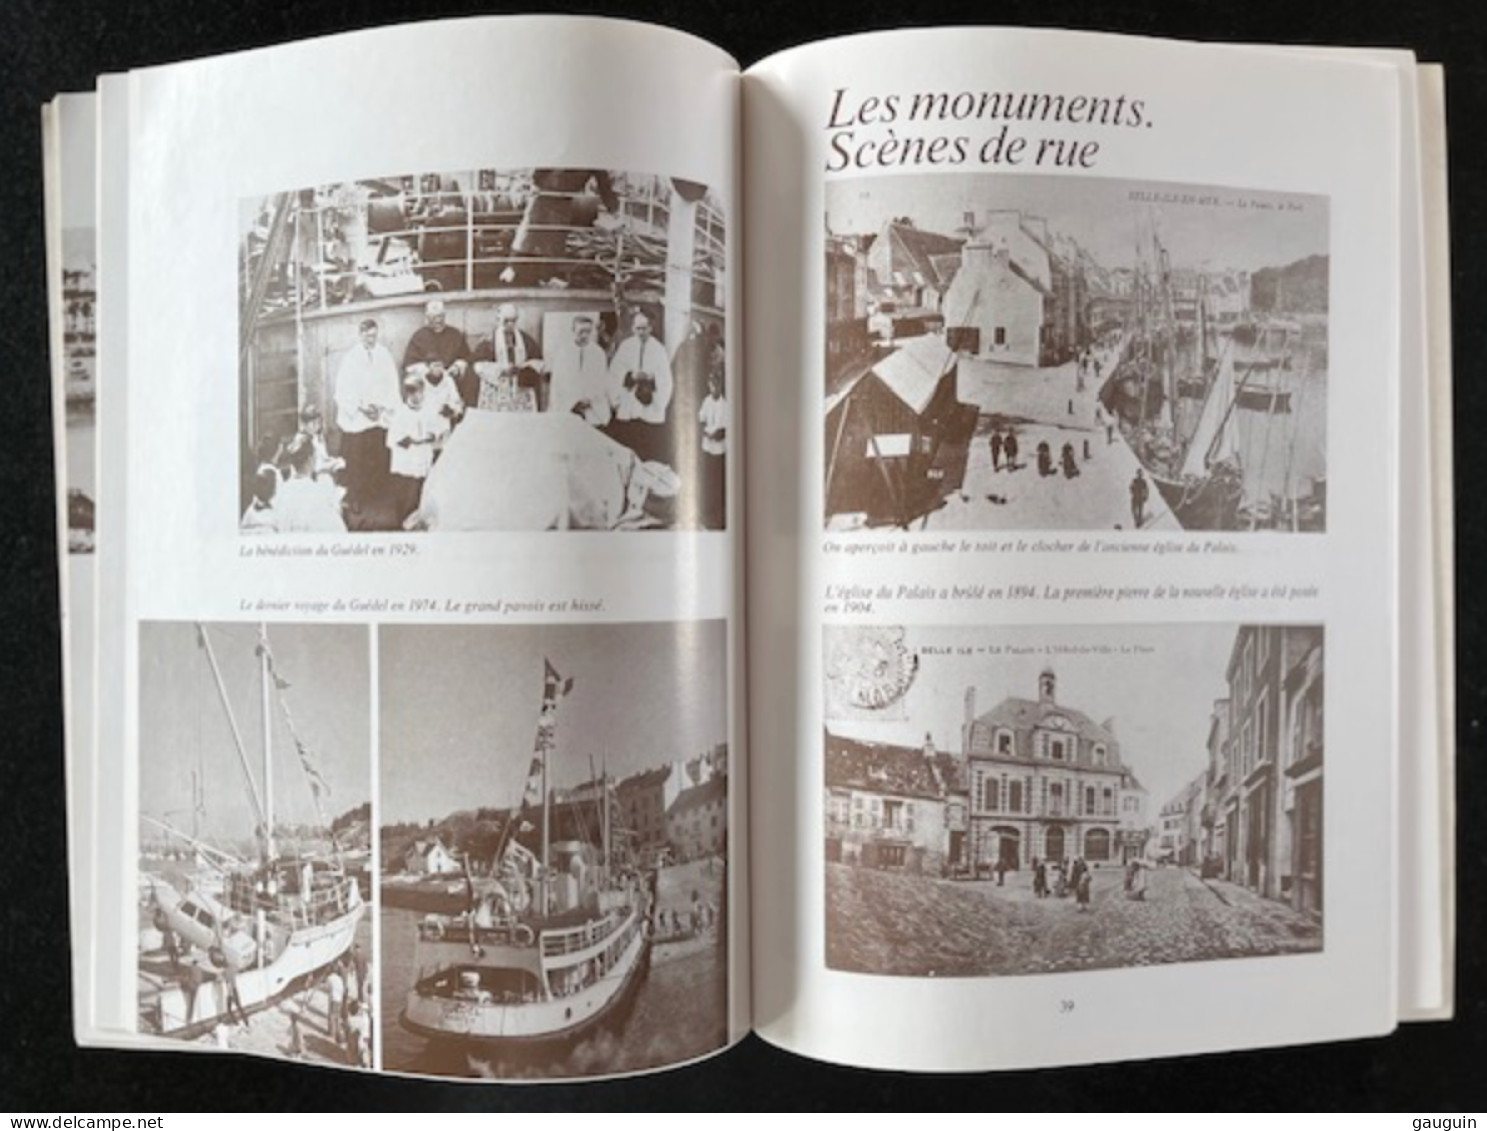 BELLE-ISLE-en-MER - "Images Du Passé" Repro. Cartes Postales Anciennes - Editions Lestrac - 78 Pages / 1977 §TOP RARE§ - Libri & Cataloghi